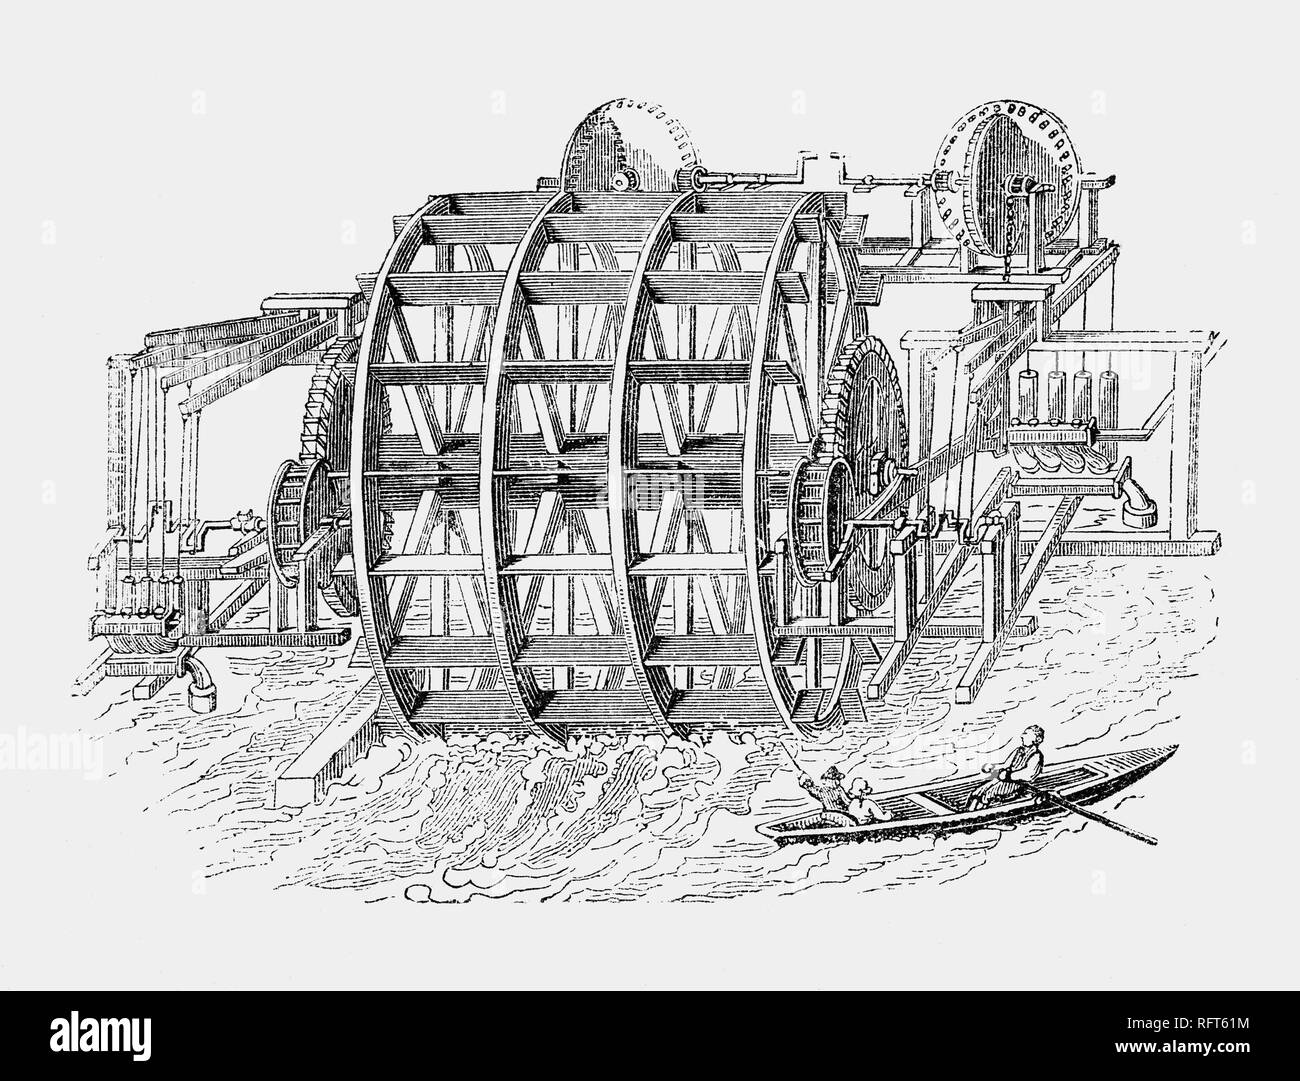 Il 24 dicembre, nel 1582, l'olandese Pieter Maritz di London Bridge di acquedotto iniziò a fornire acqua fresca dal Tamigi a case private nella città di Londra. Il piuttosto traballante-cerca apparecchiatura ha funzionato bene, ma fu distrutta nel grande incendio del 1666. Sostituito da suo nipote, continueing in uso fino alla rimozione del ponte nel 1822. L'acquedotto è stata una delle più grandi aziende idriche a Londra la cui crescita iniziale era legata alla città in espansione, ma limitato nel XVIII secolo perché le sue canalizzazioni potrebbe non raggiungere la periferia in espansione. Foto Stock